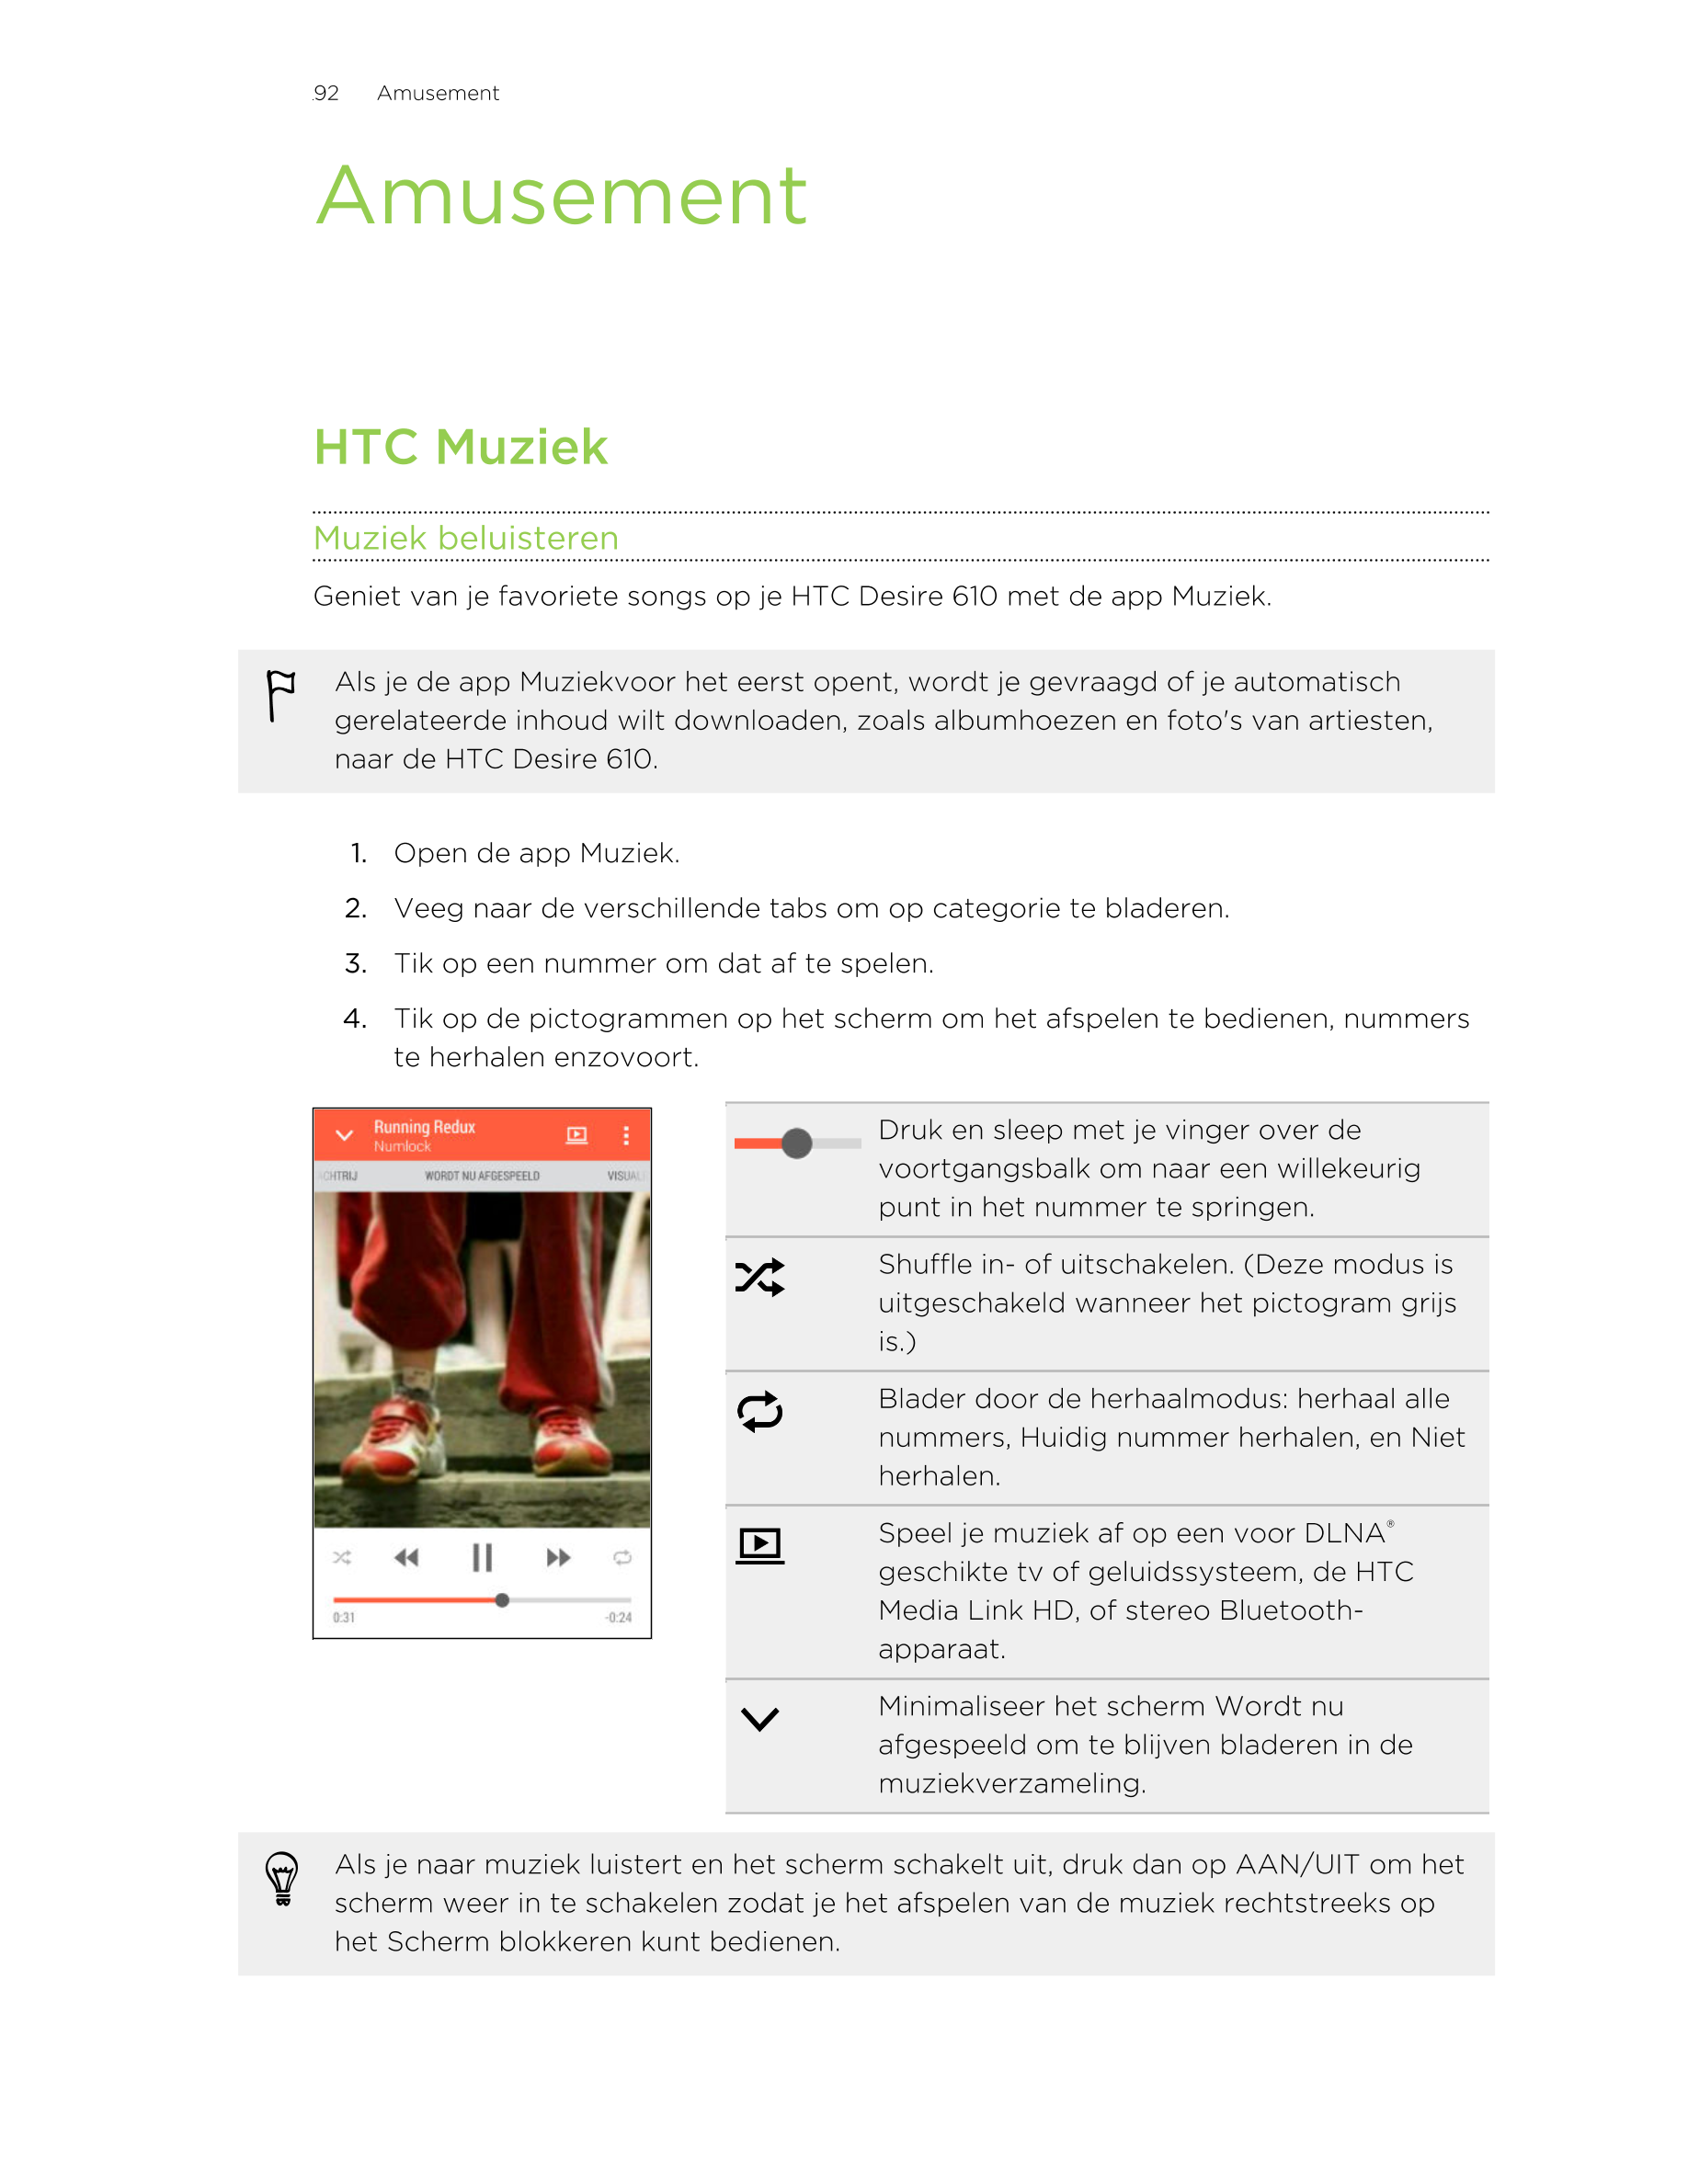 92      Amusement
Amusement
HTC Muziek
Muziek beluisteren
Geniet van je favoriete songs op je HTC Desire 610 met de app Muziek.
